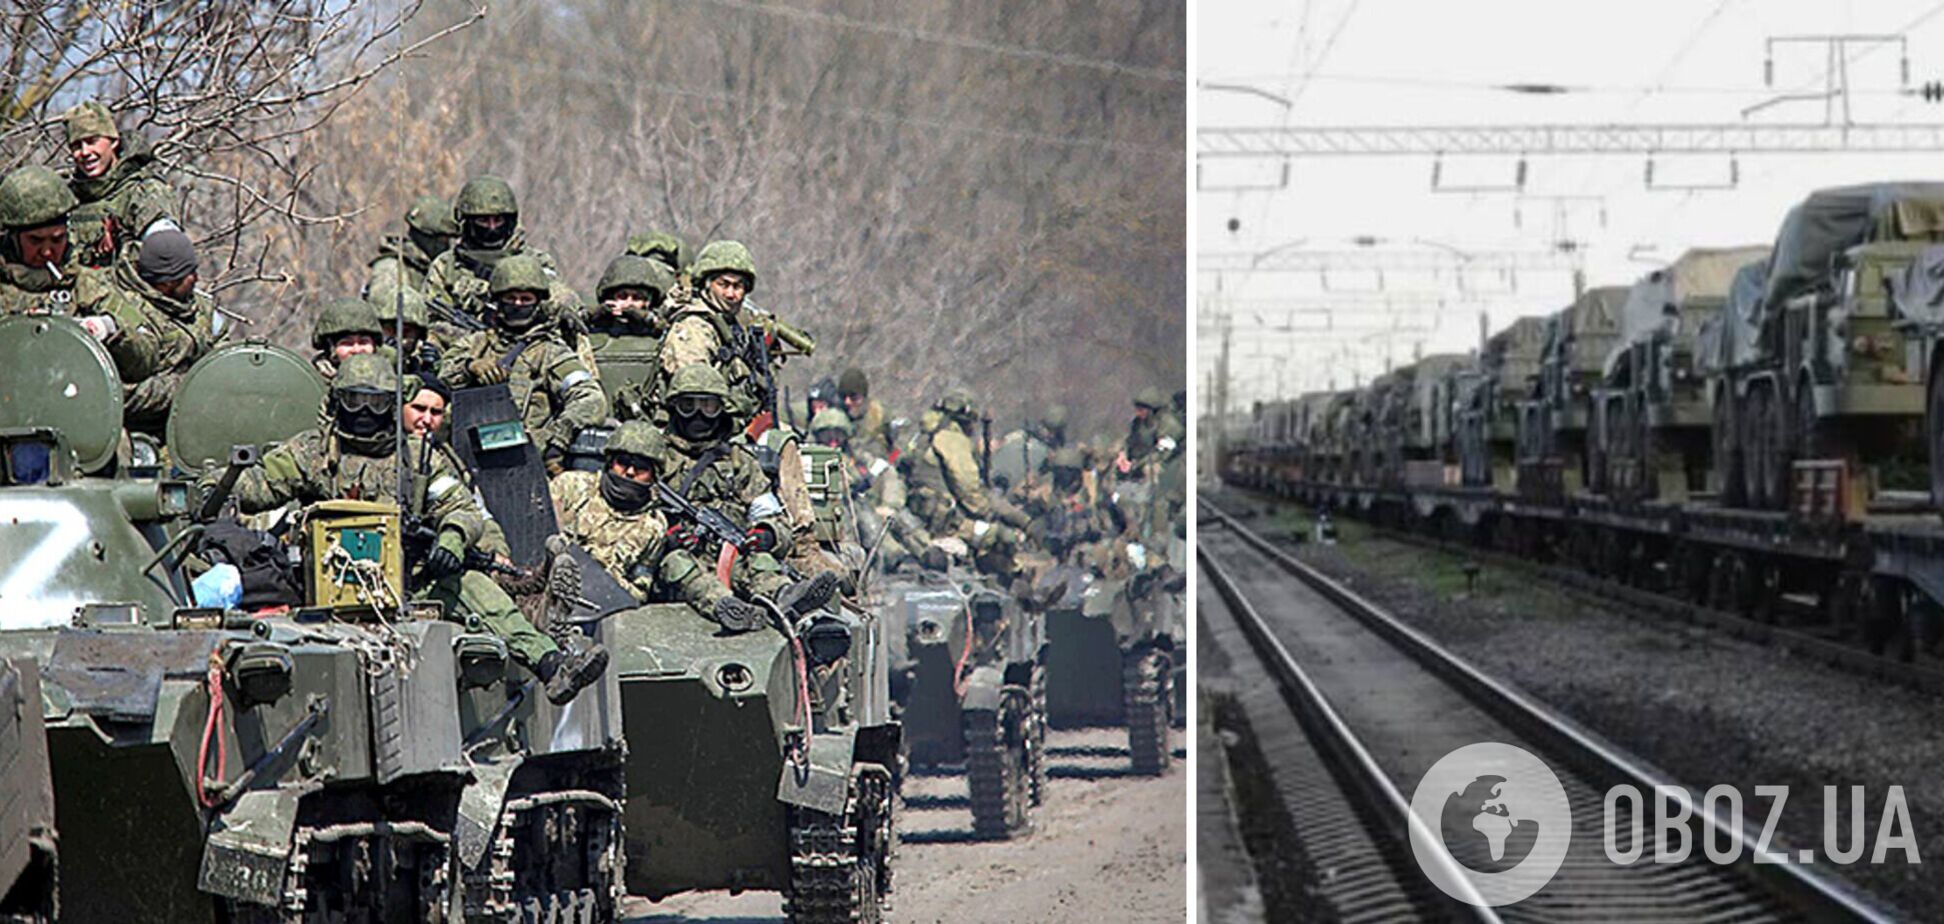 Войска РФ по железной дороге стягивают технику к границам Украины. Спутниковые фото